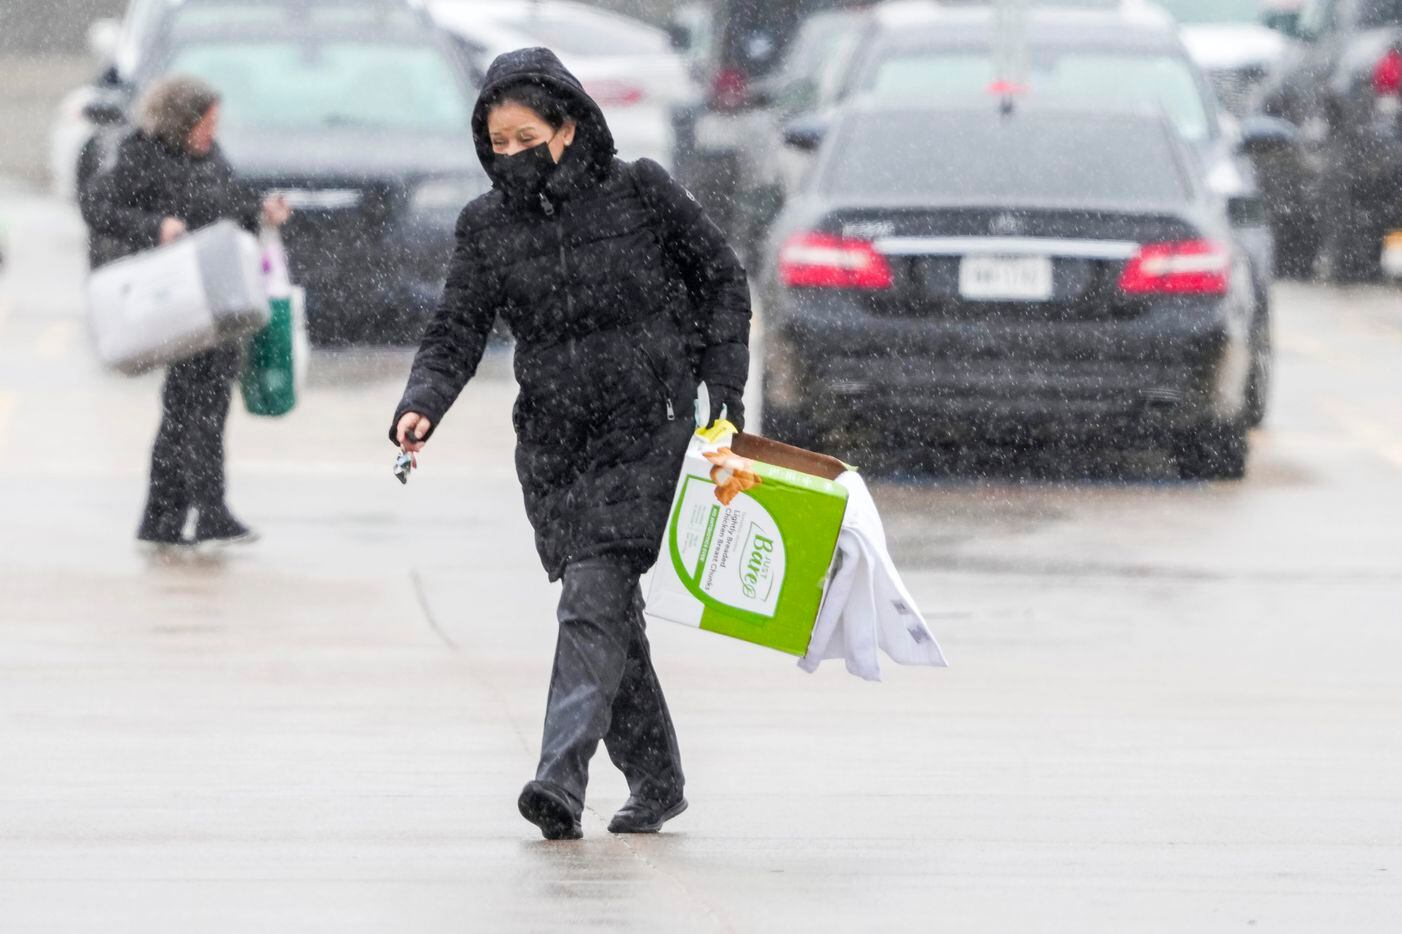 Plano „Costco“ parduotuvės pirkėjai keliauja šaltu lietumi, kai keliauja į savo automobilius...